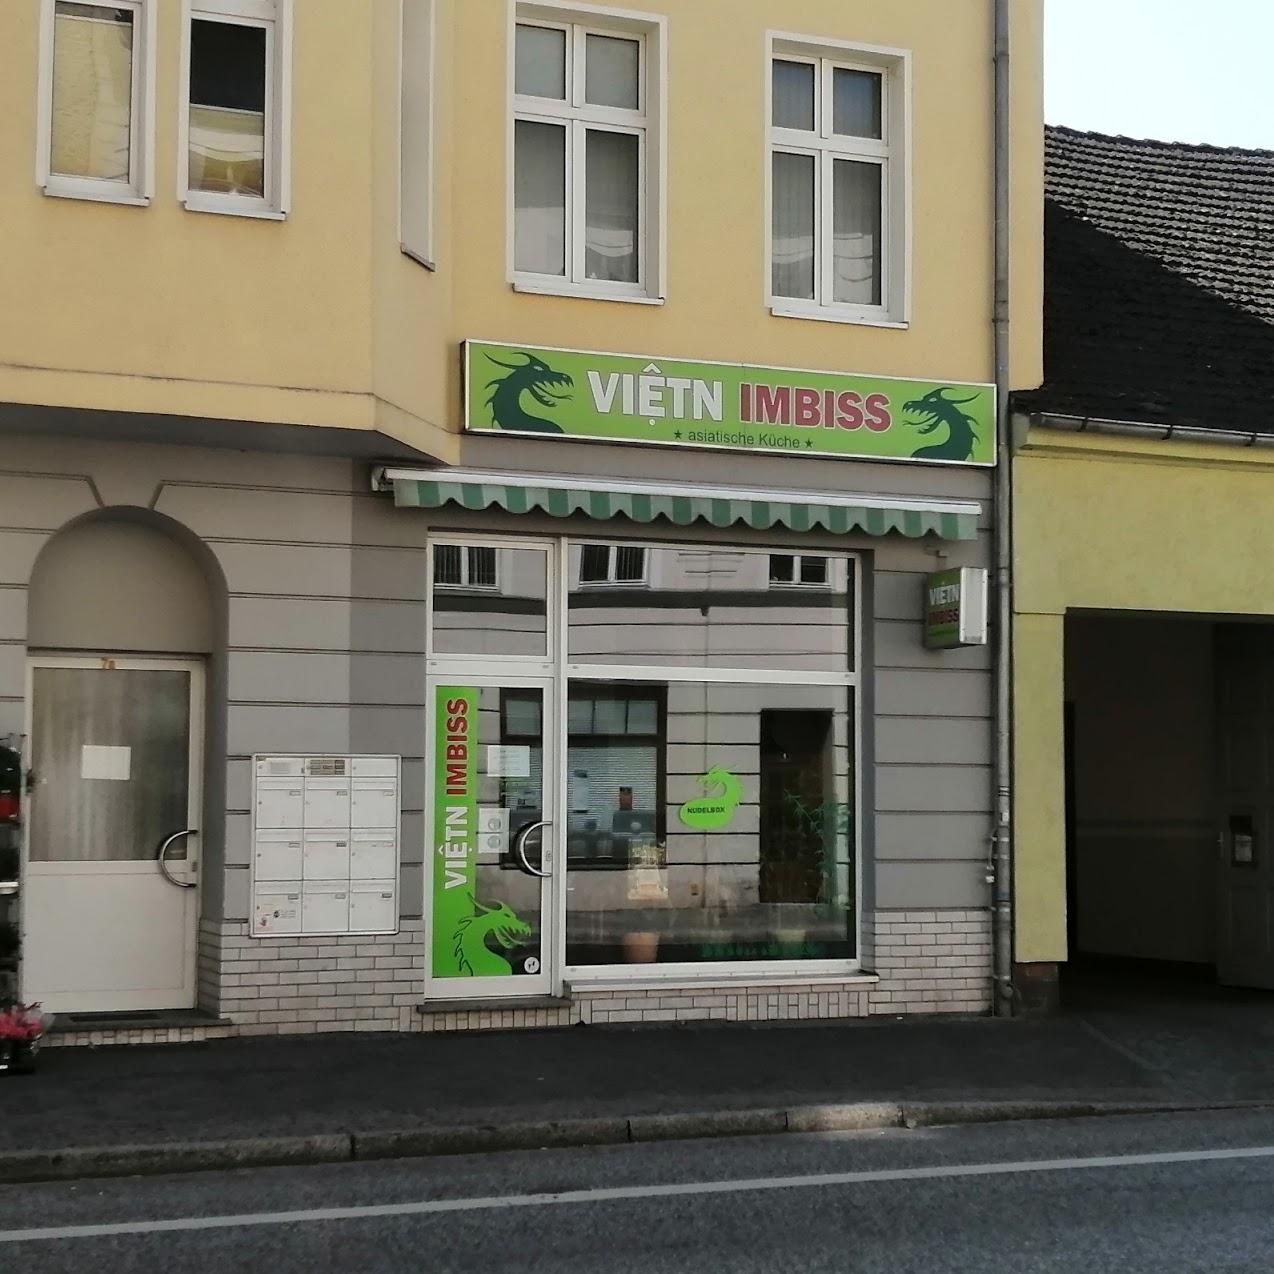 Restaurant "Vietn Imbiss" in Nauen